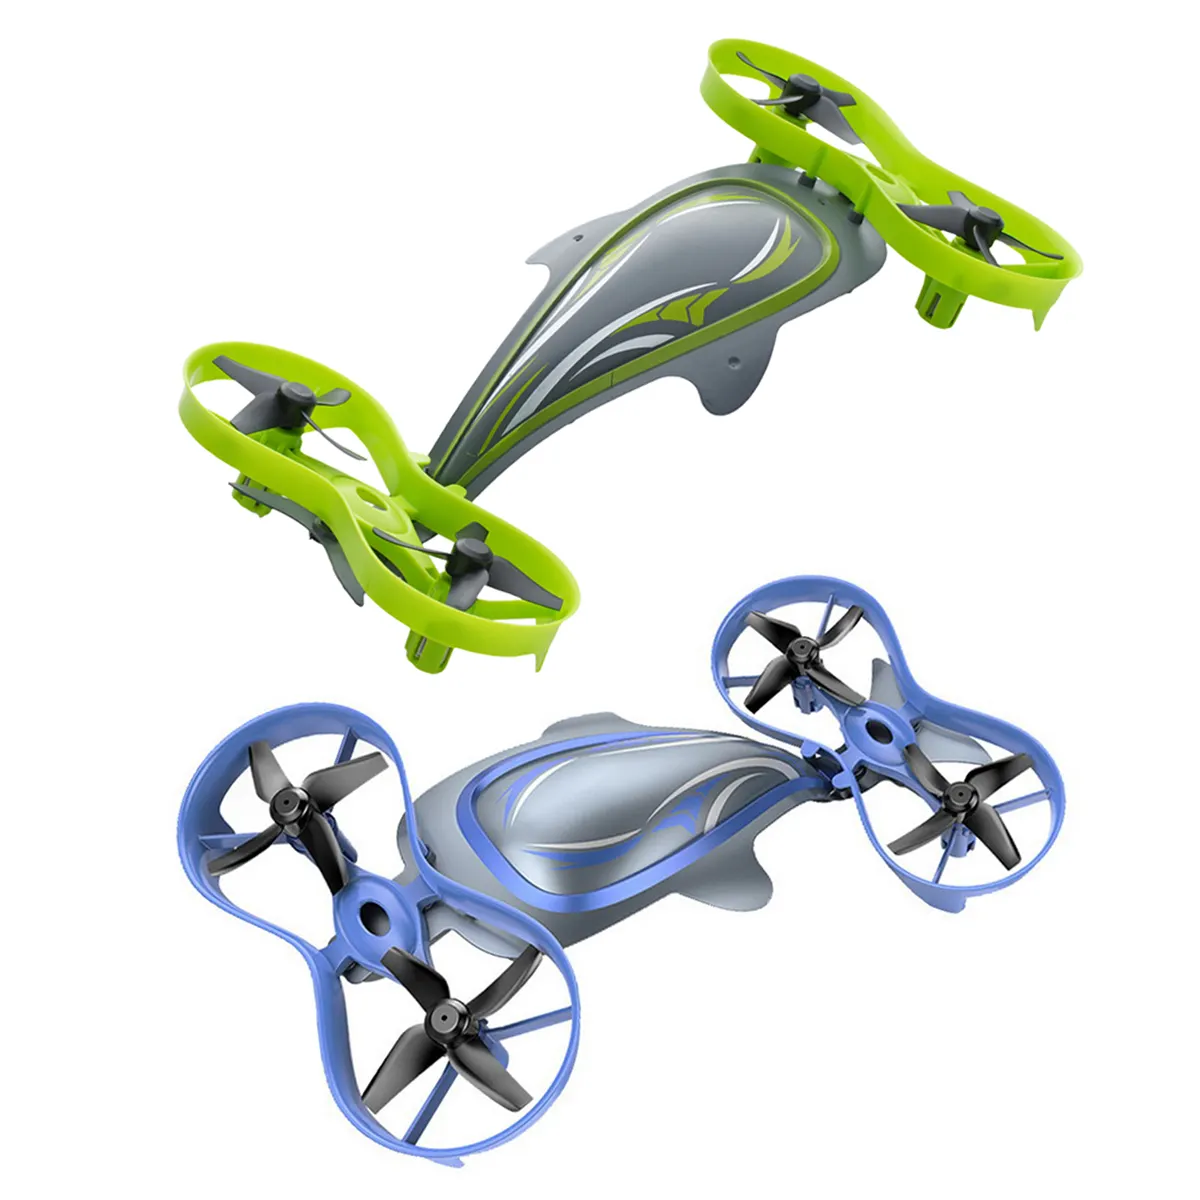 Water Land Air 3-em-1triphibian Quadcopter Controle Remoto Drone Brinquedo para Crianças 360 Rotação 2.4ghz Branco 8 Minutos 4 Canais